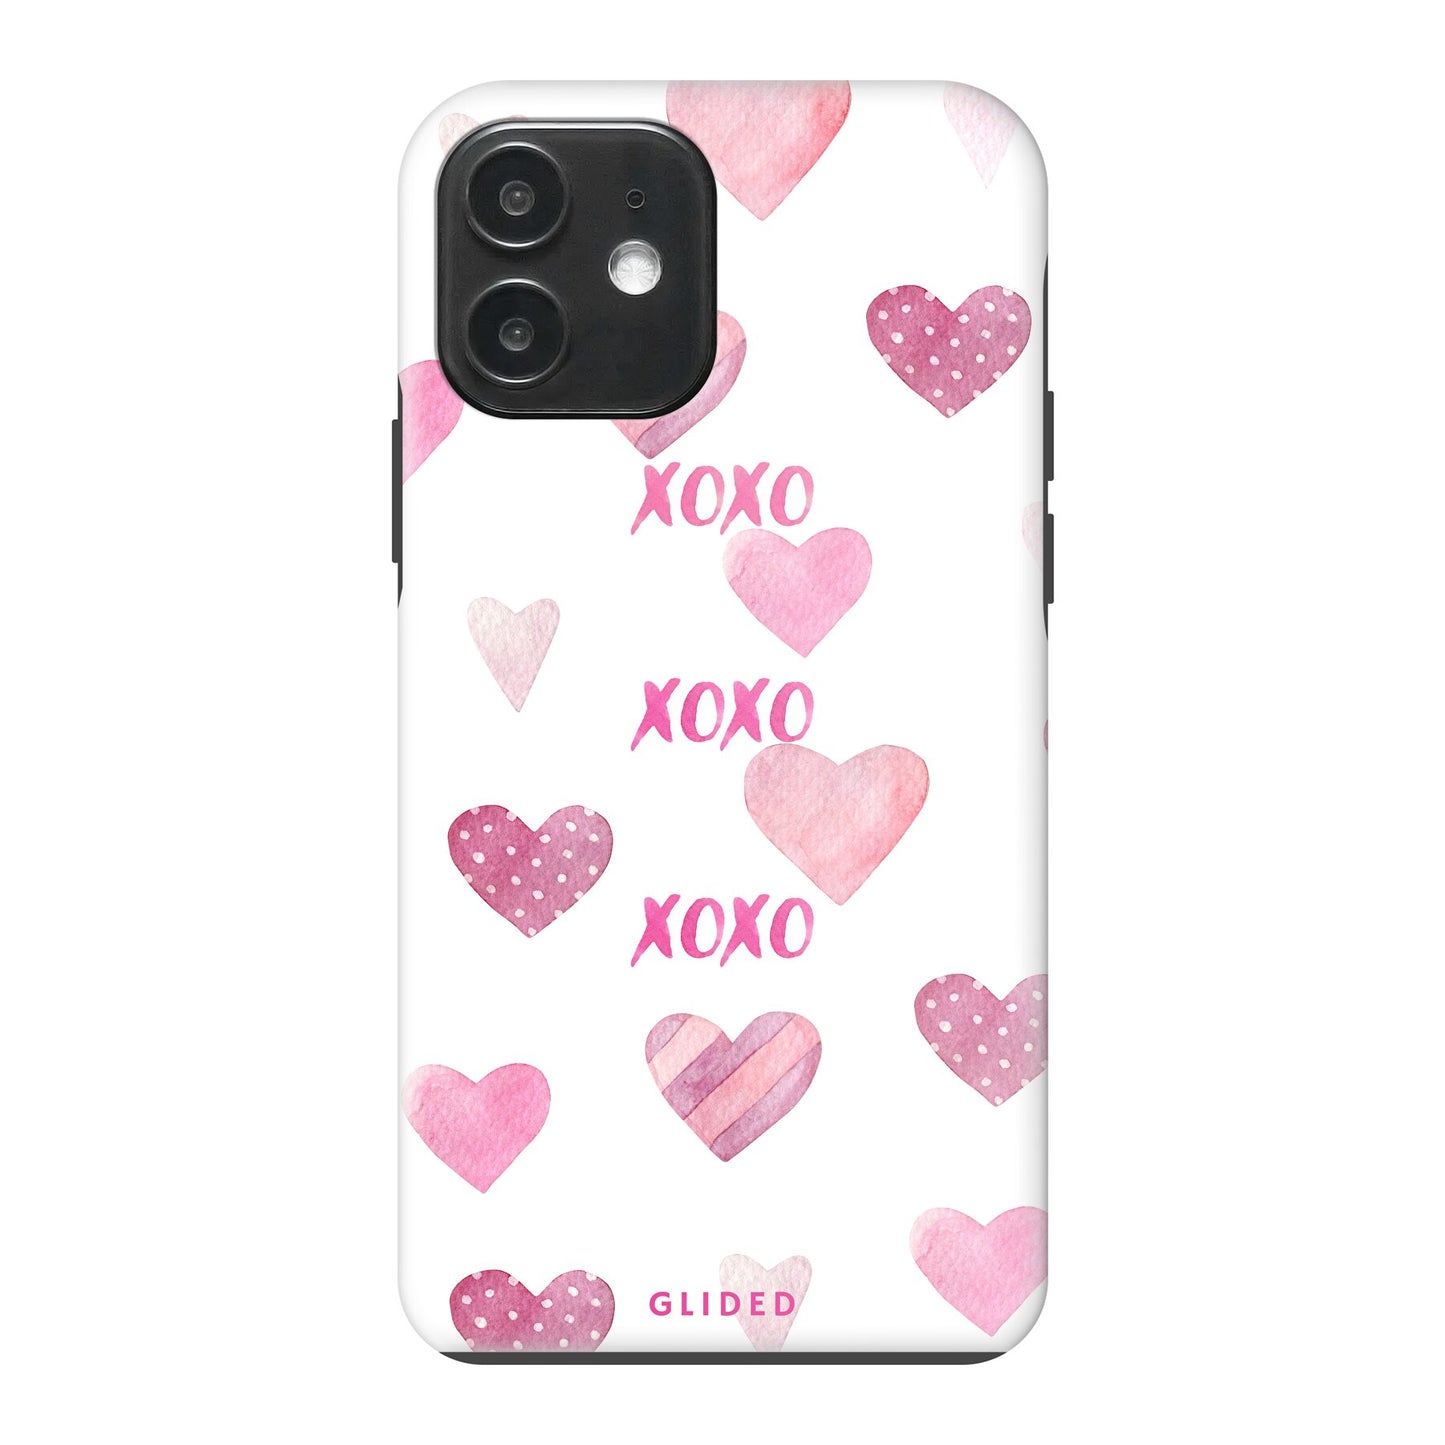 Xoxo - iPhone 12 Pro - Tough case